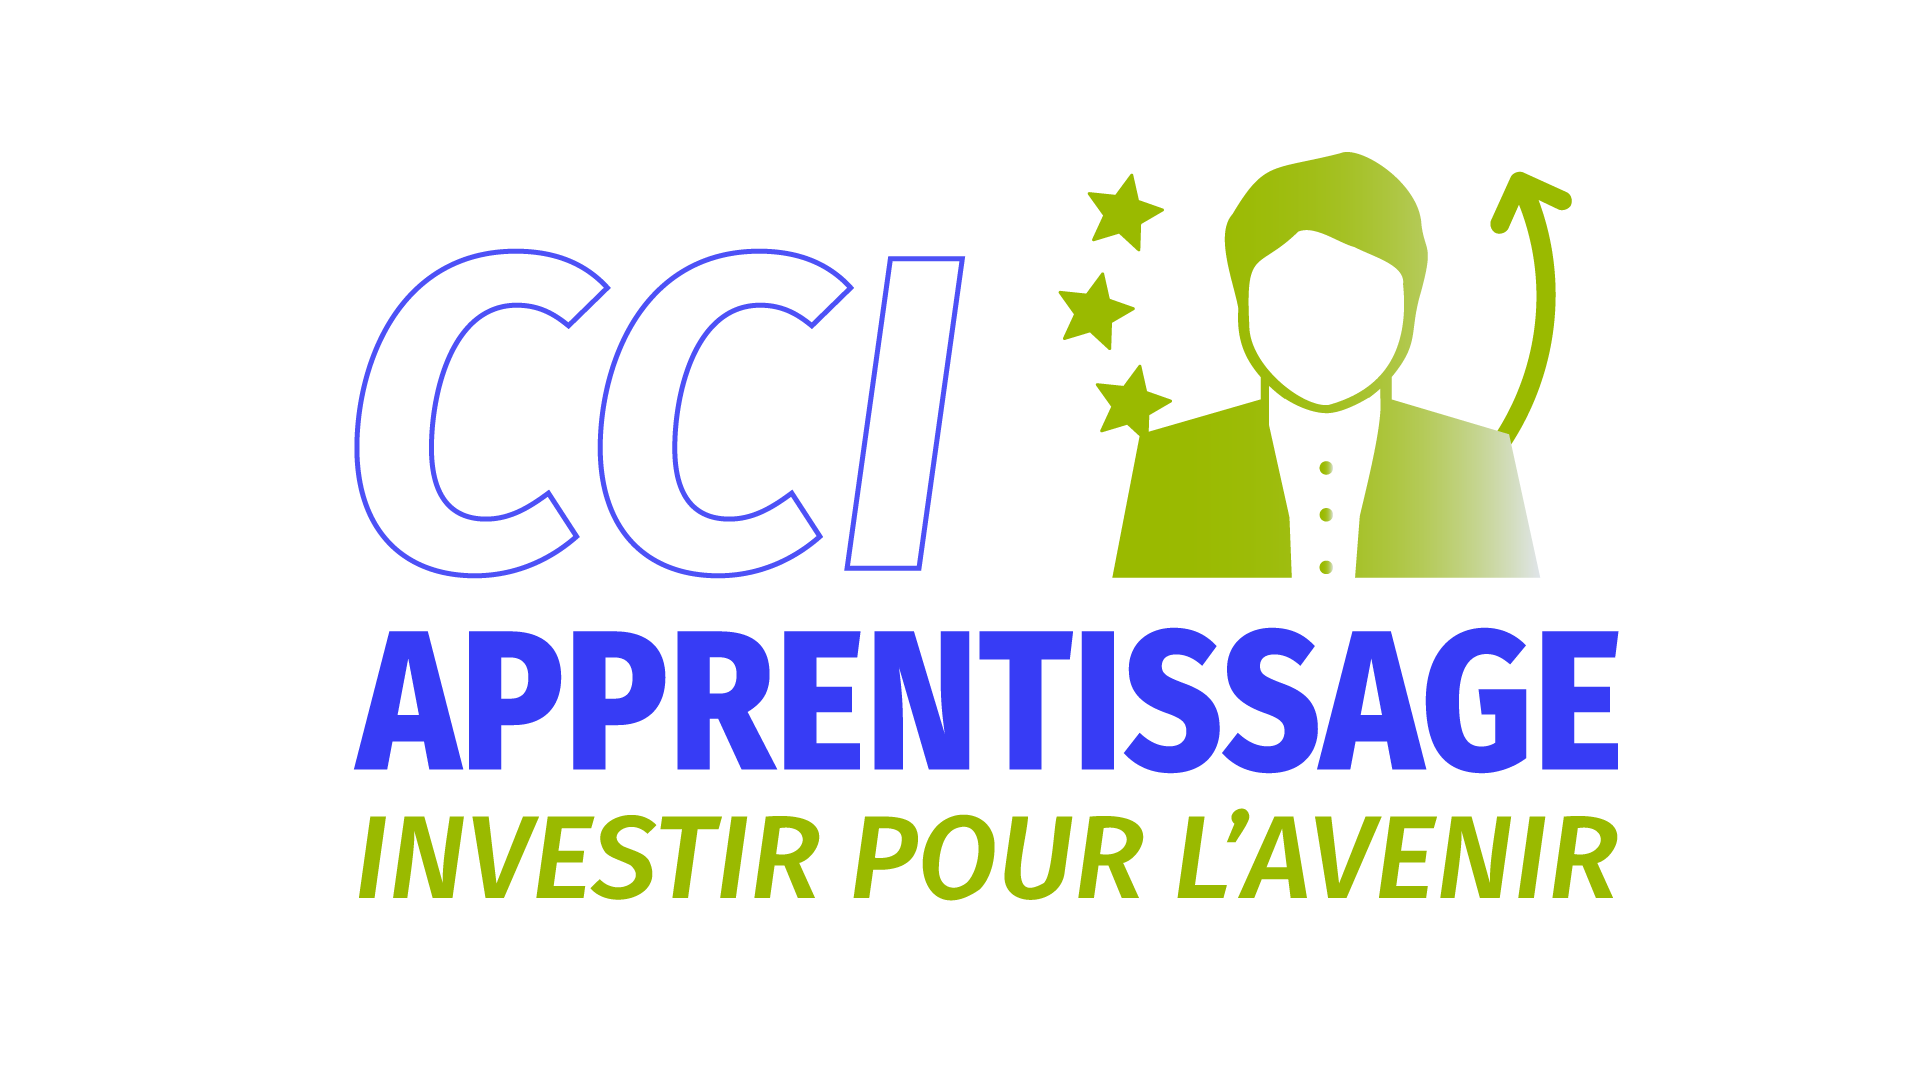 CCI apprentissage logo